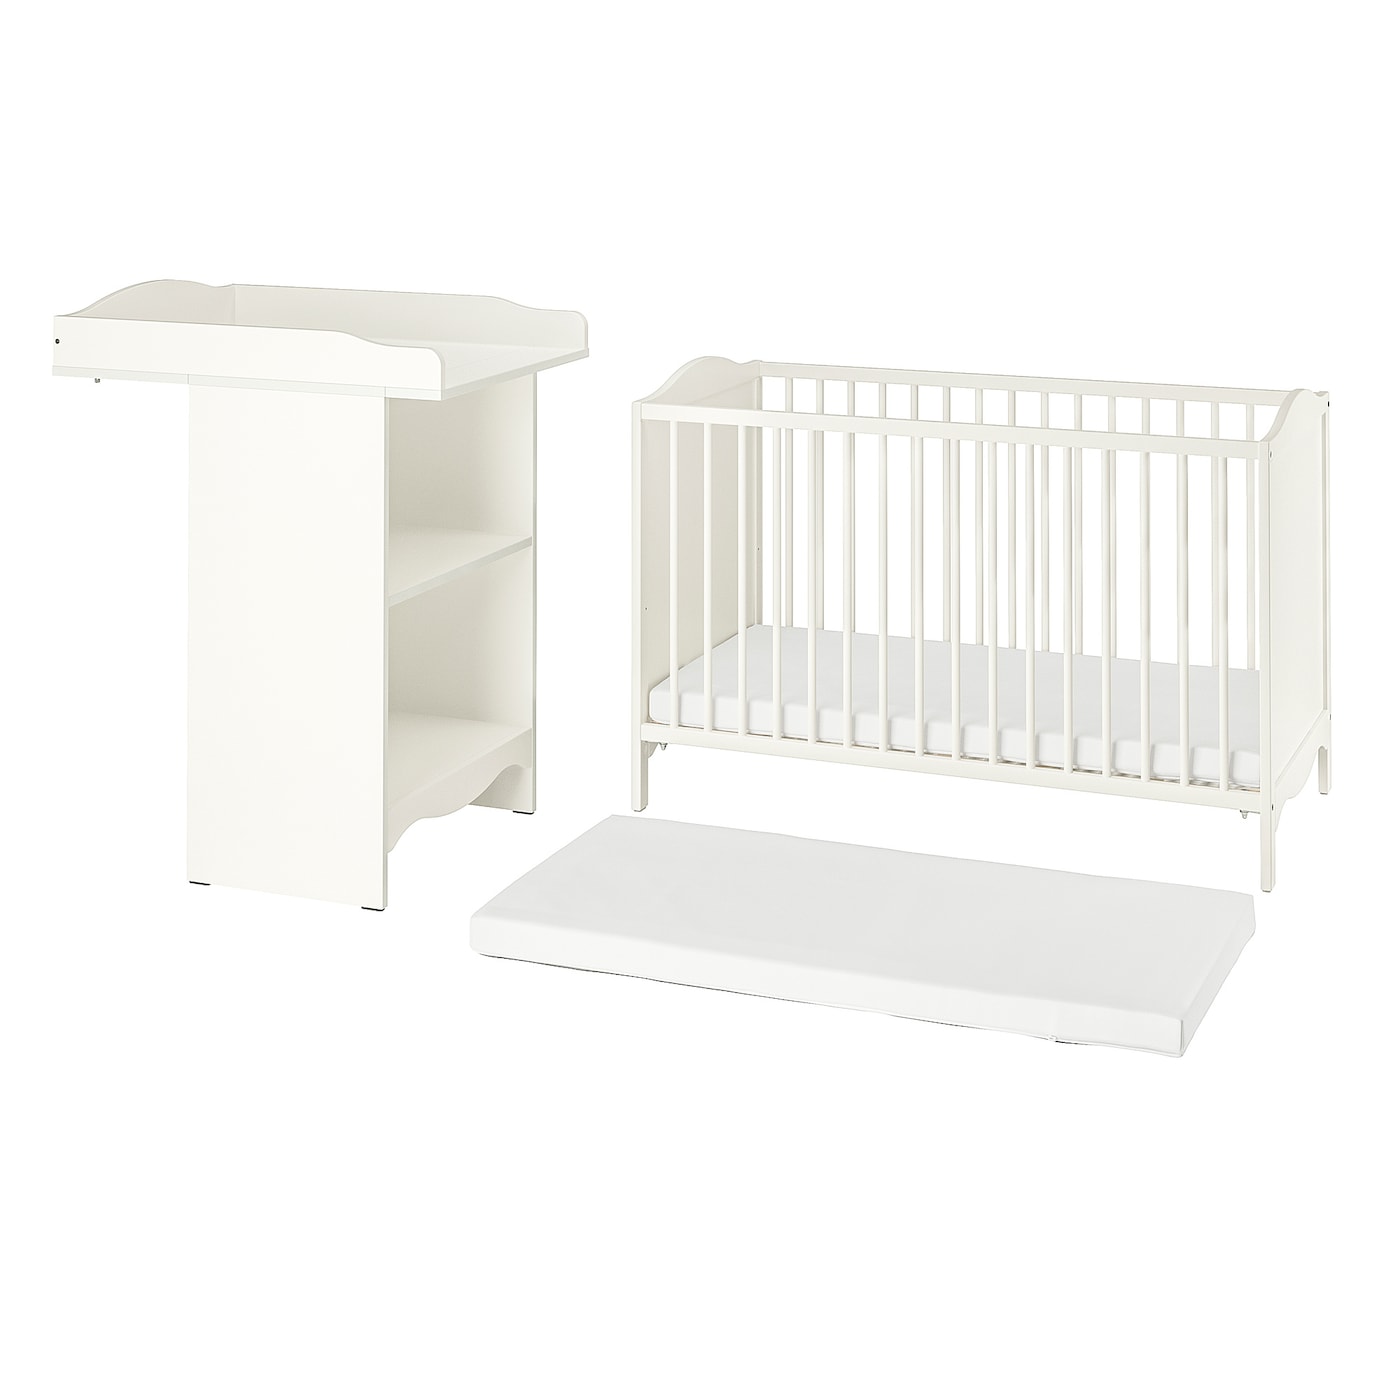 Кровать для новорожденных - IKEA SMÅGÖRA/SMAGORA PELLEPLUTT, 60x120 см, белый, СМОГЁРА ПЕЛЛЕПЛУТТ ИКЕА